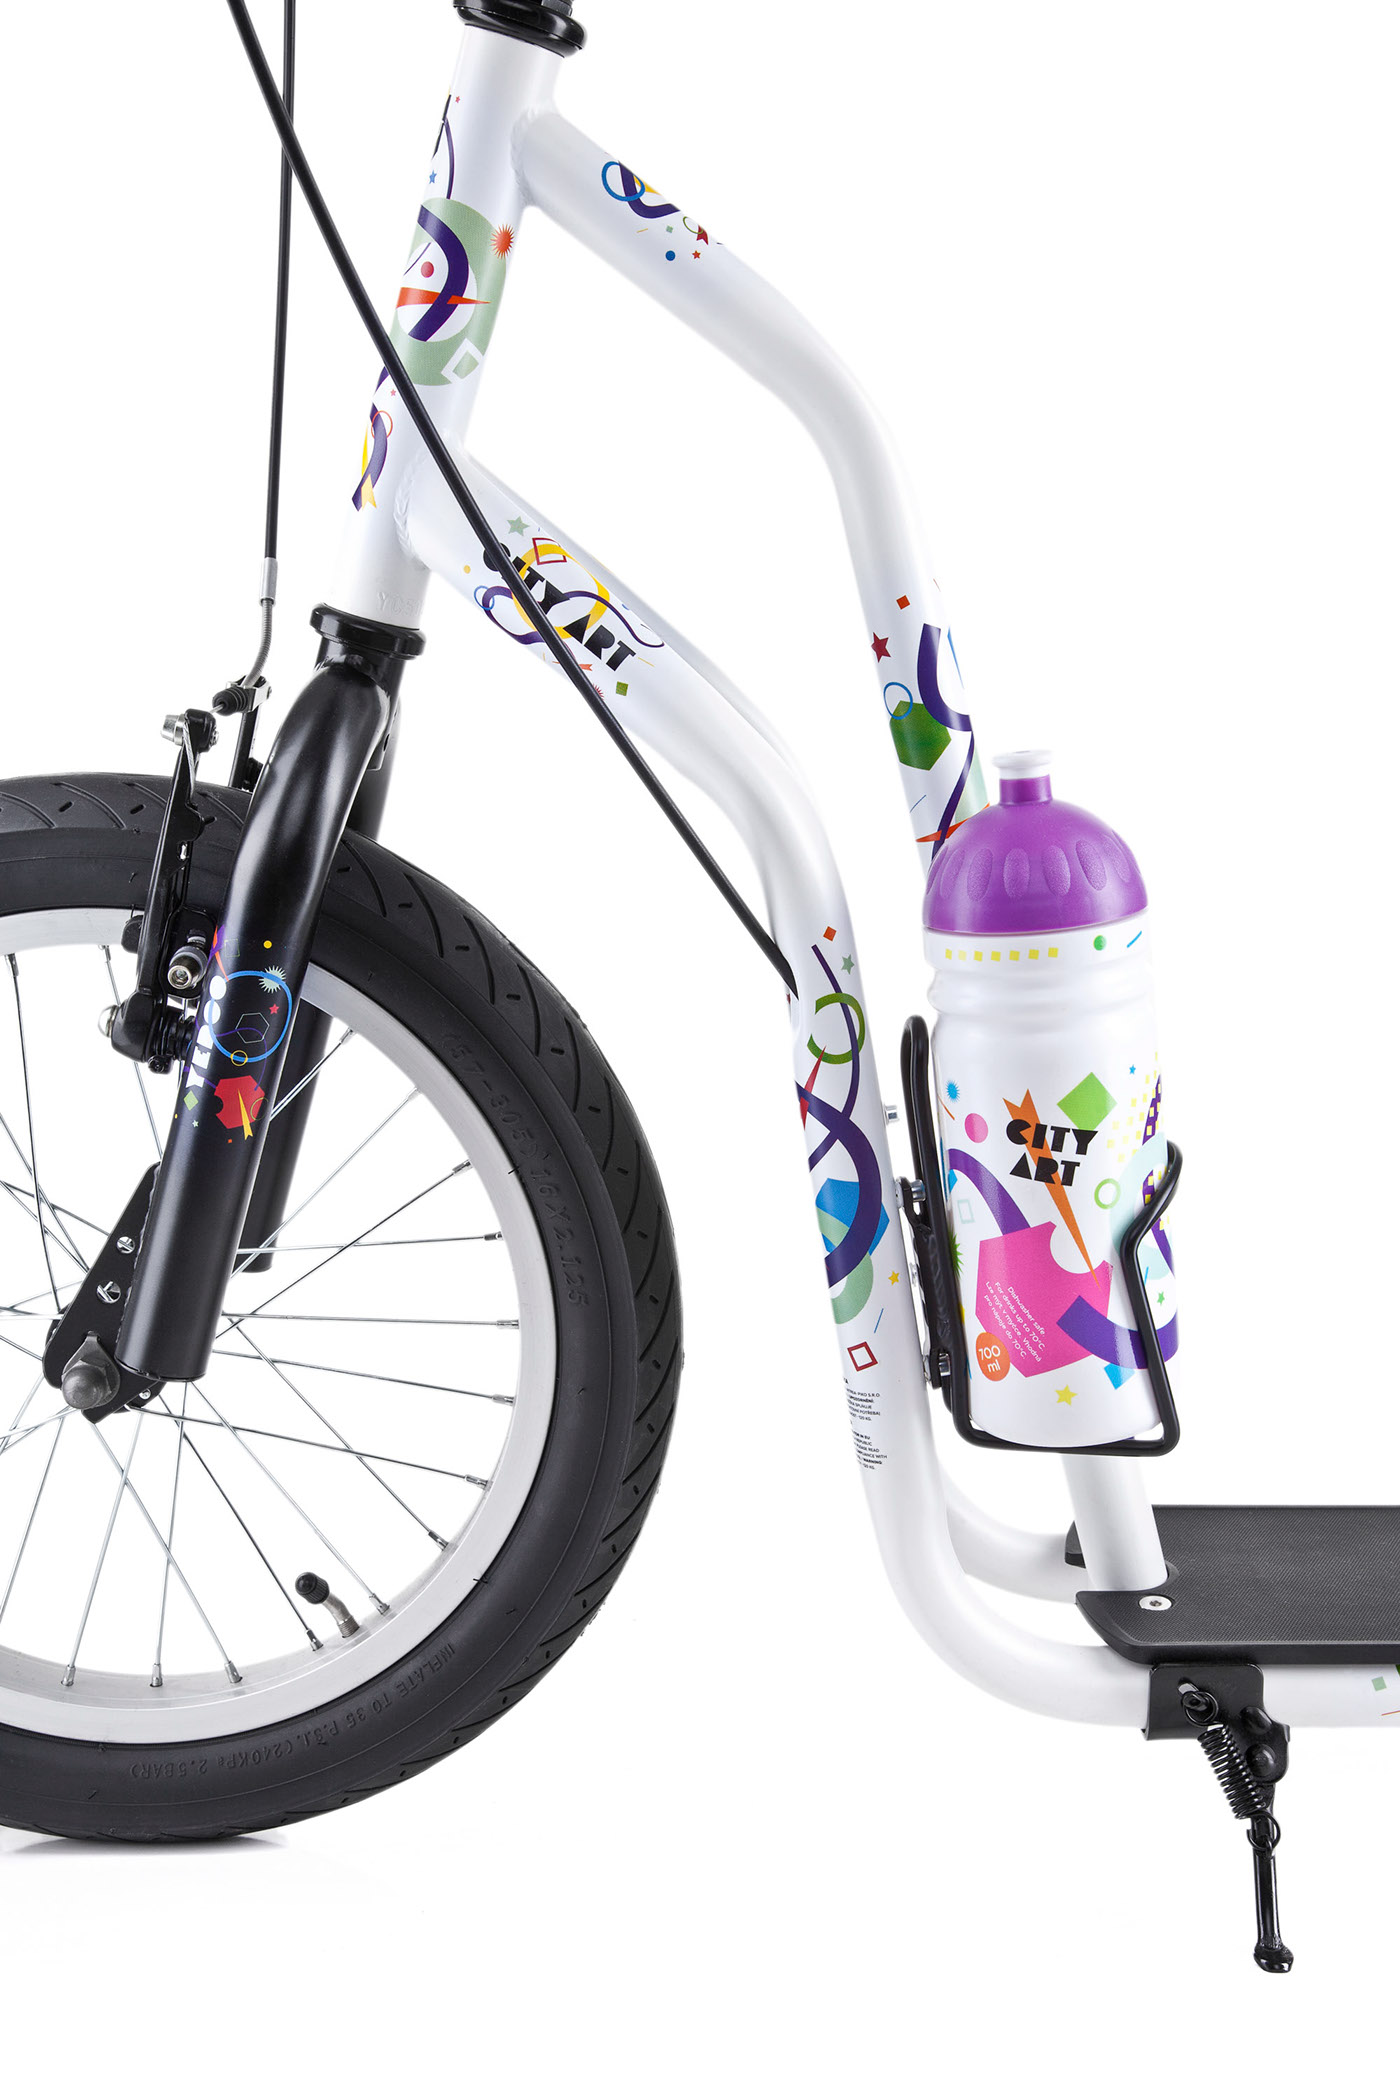 Scooter sport bottle art Hipster Sailor comics balance bike